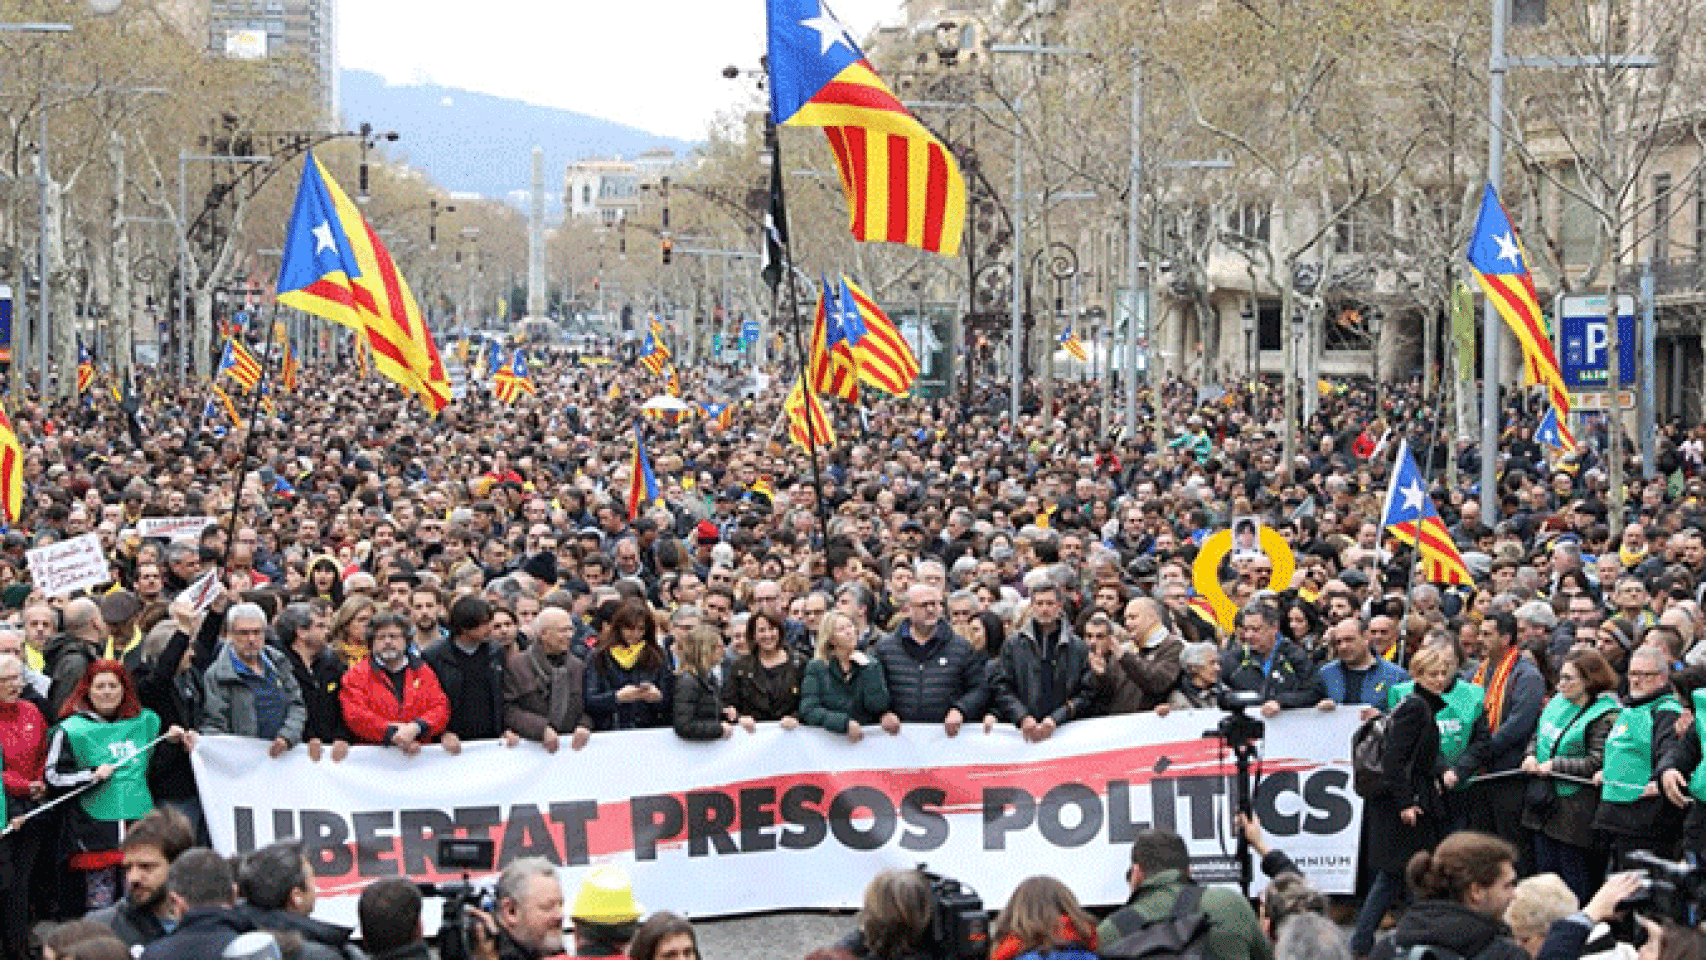 La cabecera de la manifestación contra la detención de Puigdemont en paseo de Gràcia. La decisión ahora de la justicia alemana complica las cosas al Gobierno español  / TWITTER